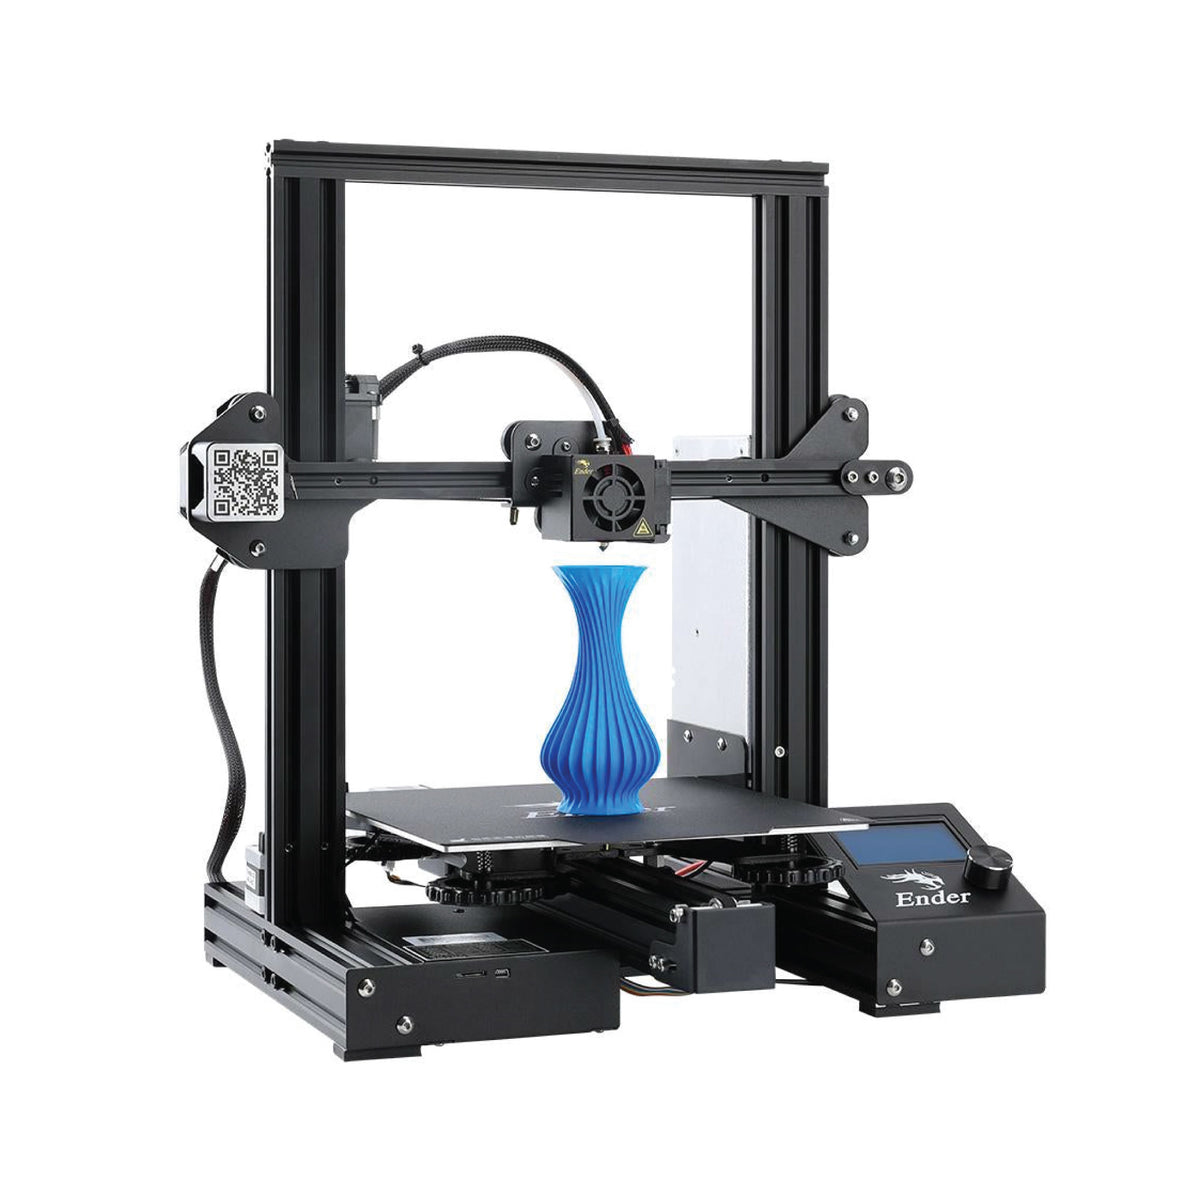 Creality Ender 3 V2 3D Printer - RobotShop